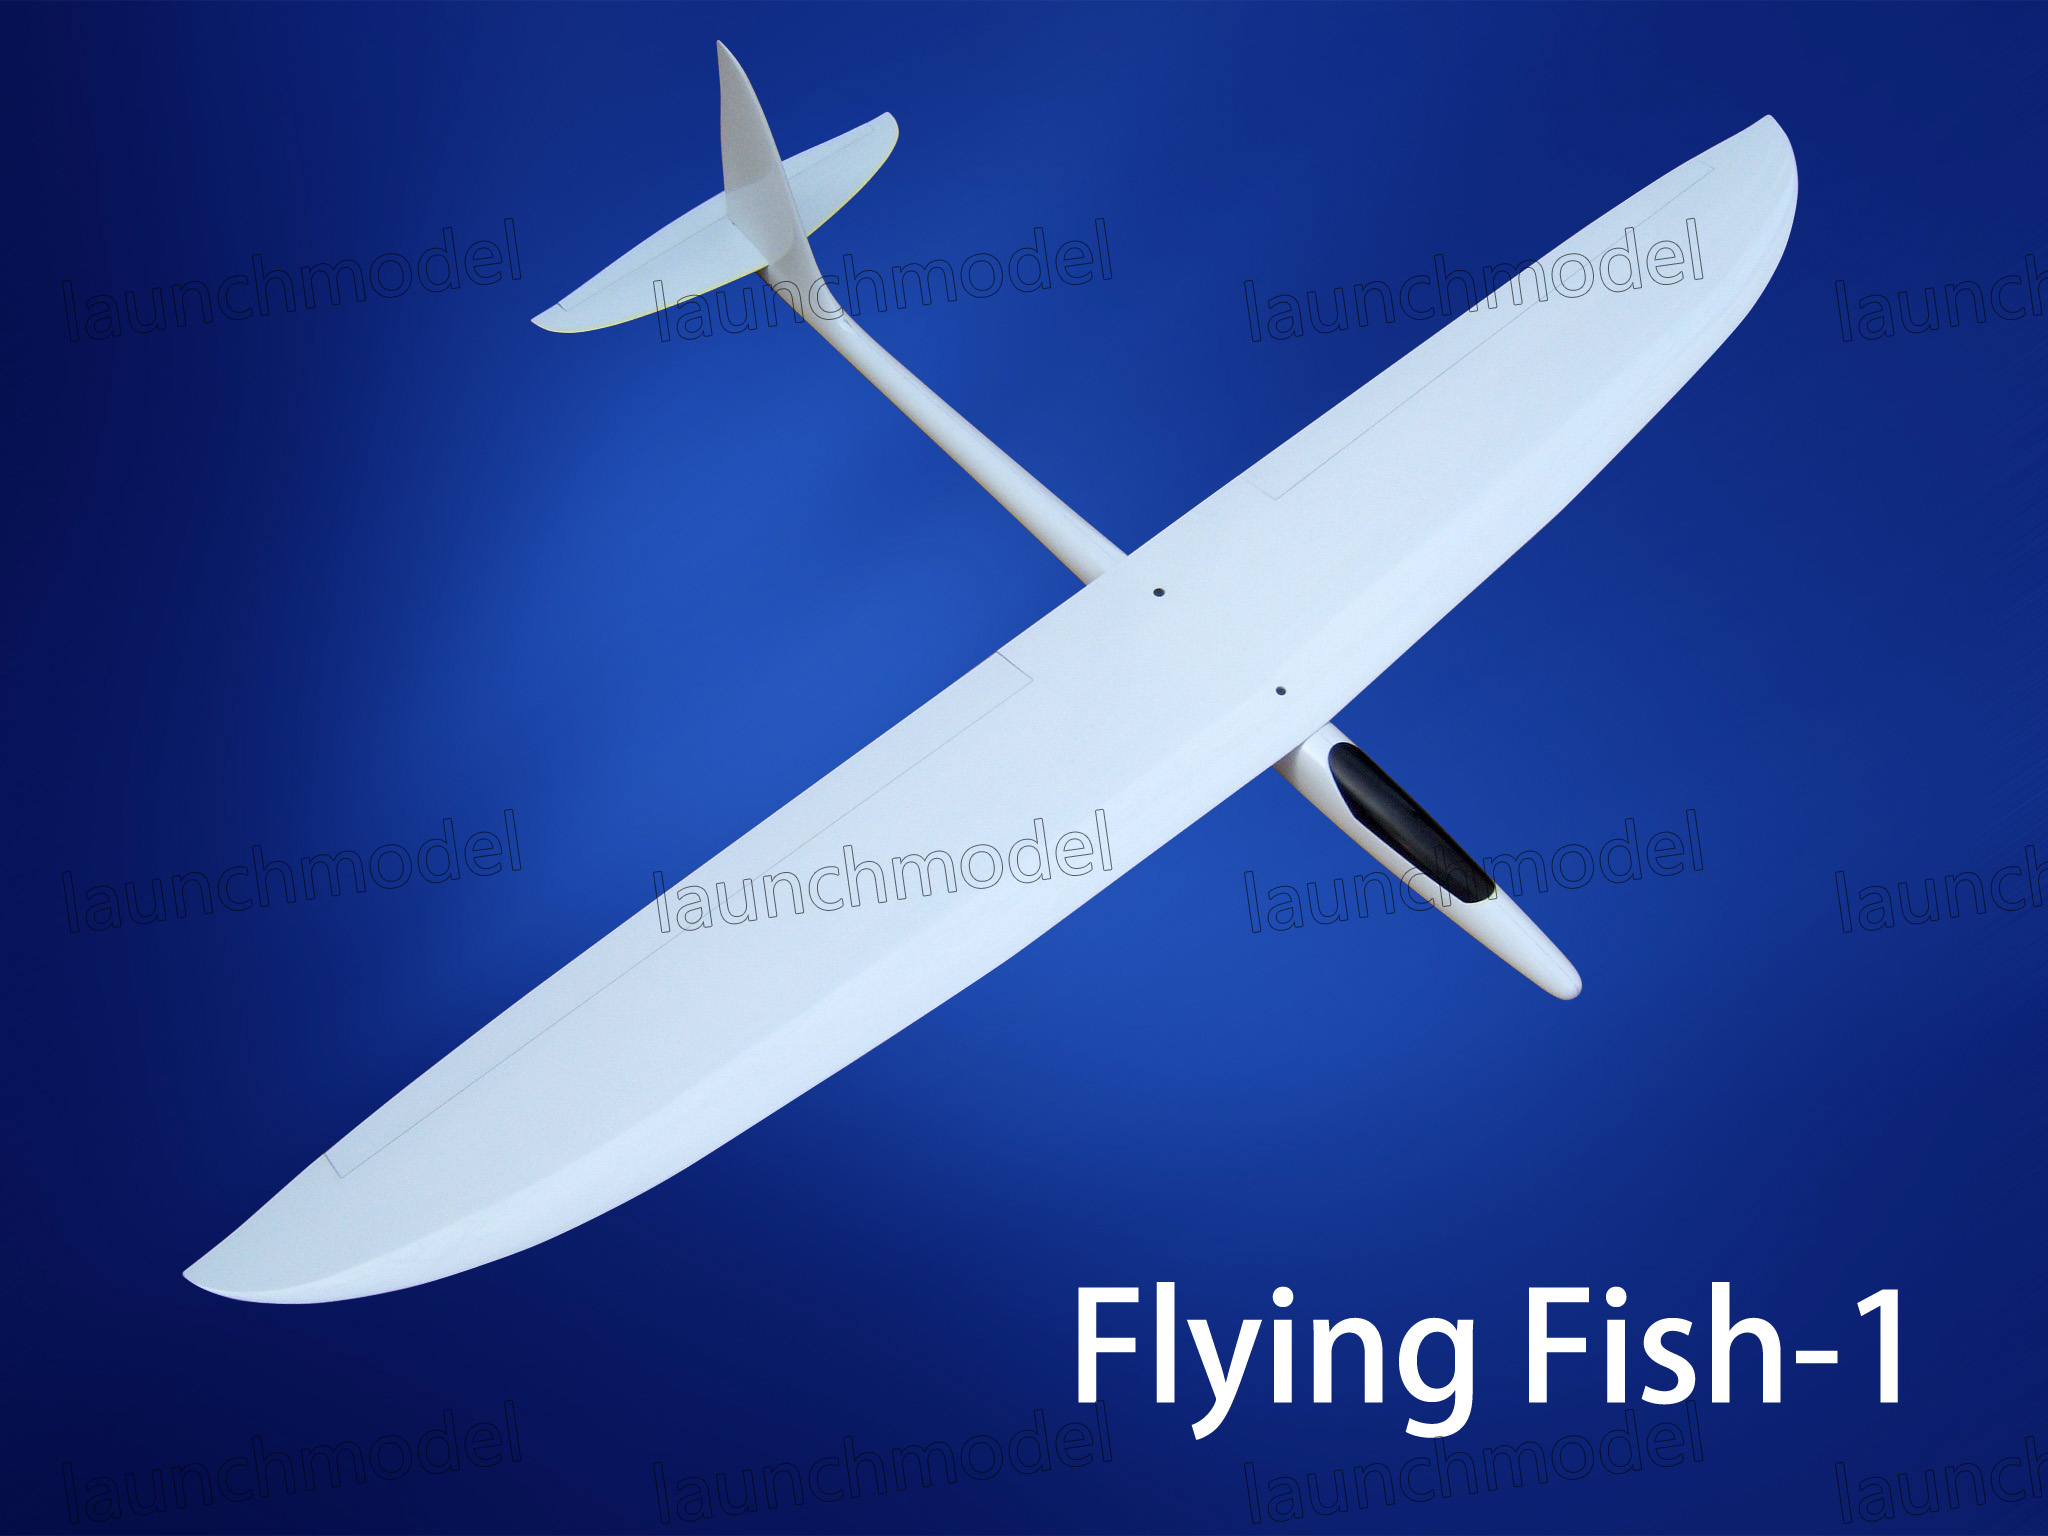 FLYING FISH -1